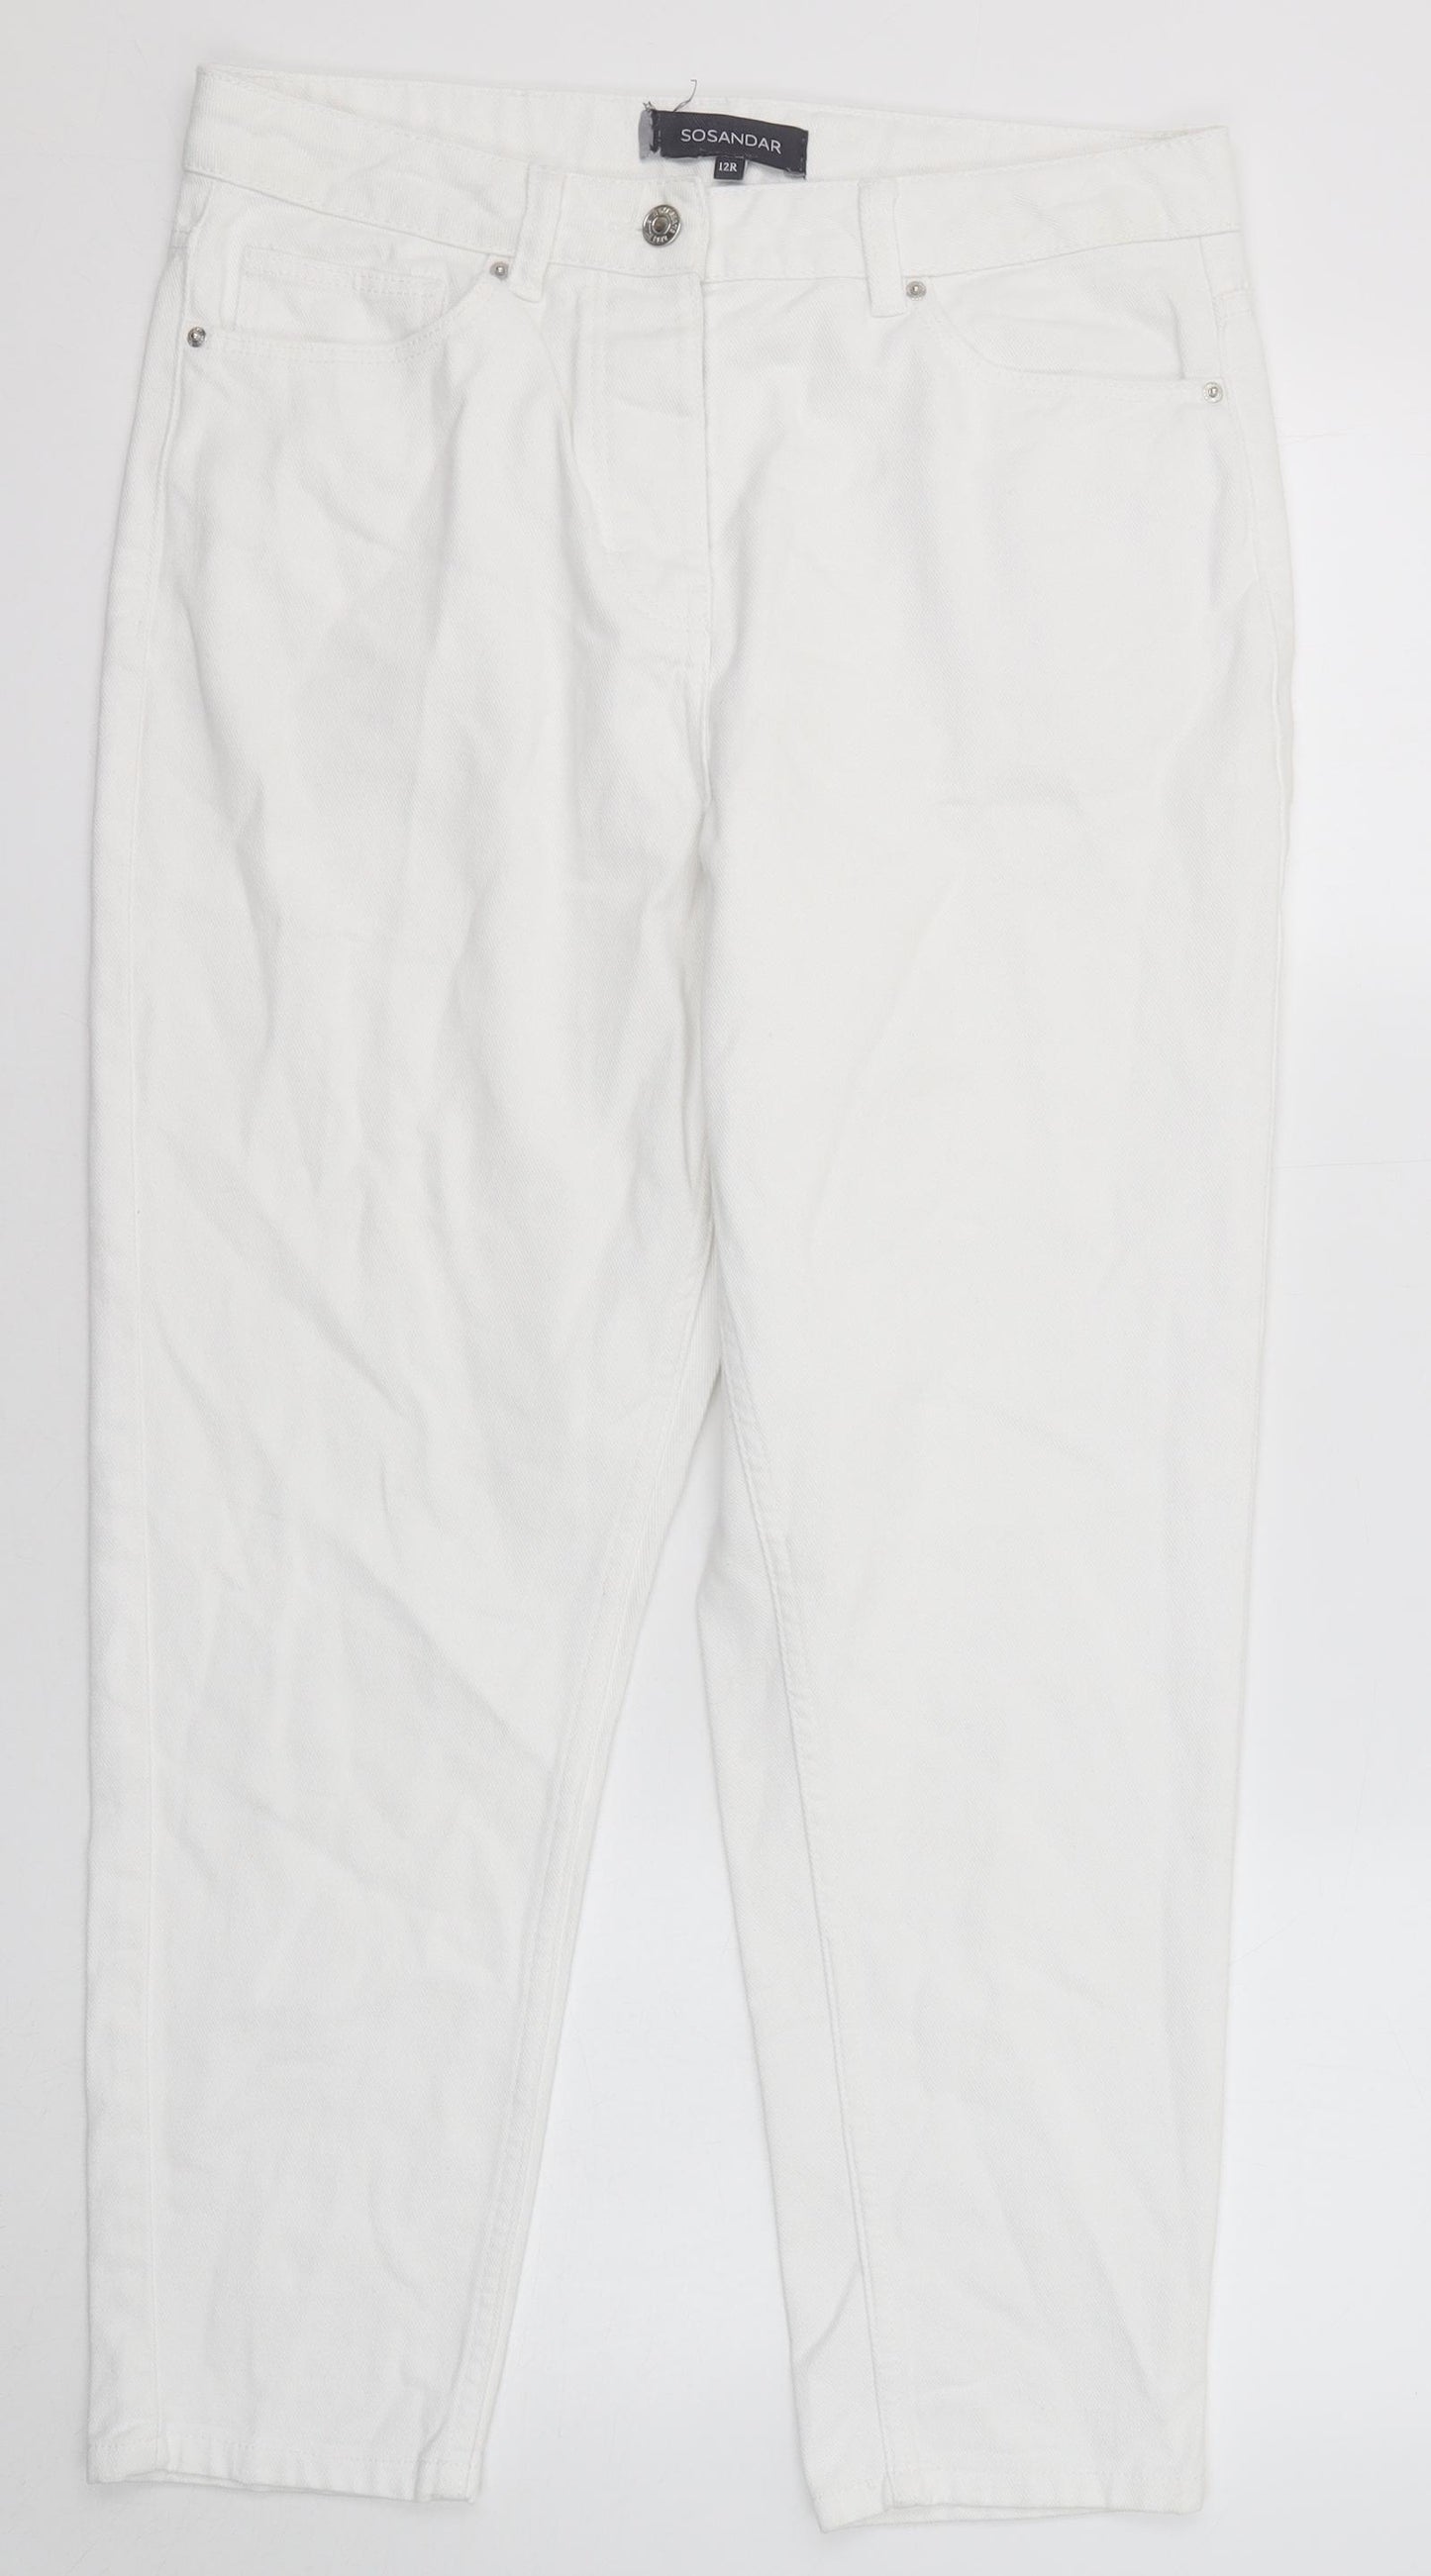 Sosandar Womens White Cotton Mom Jeans Size 12 Regular Zip